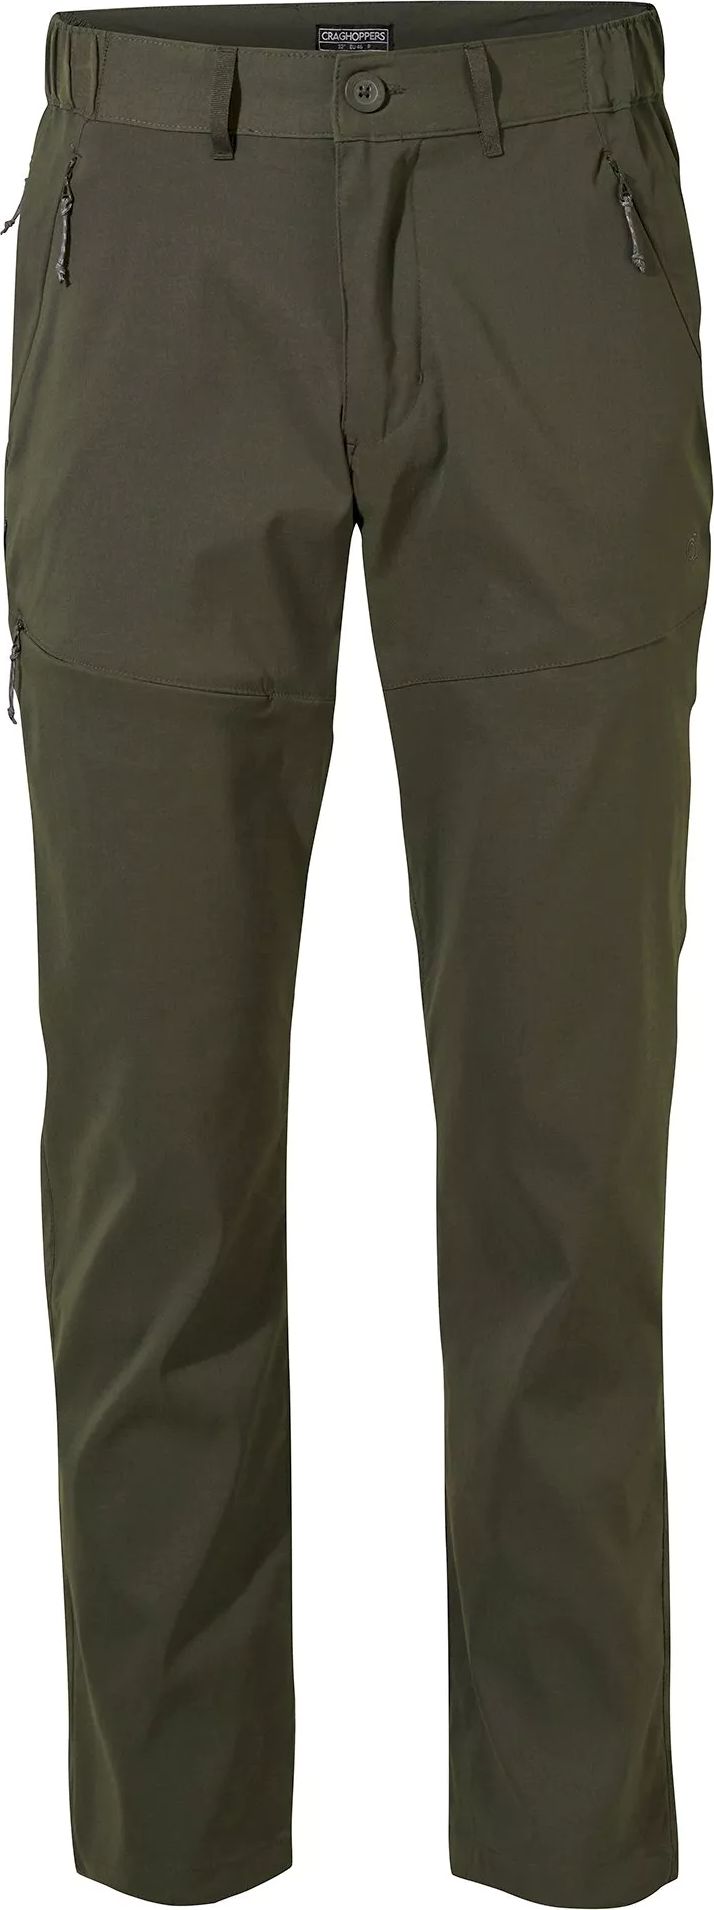 Craghoppers Men's Kiwi Pro II Trousers Dark Khaki